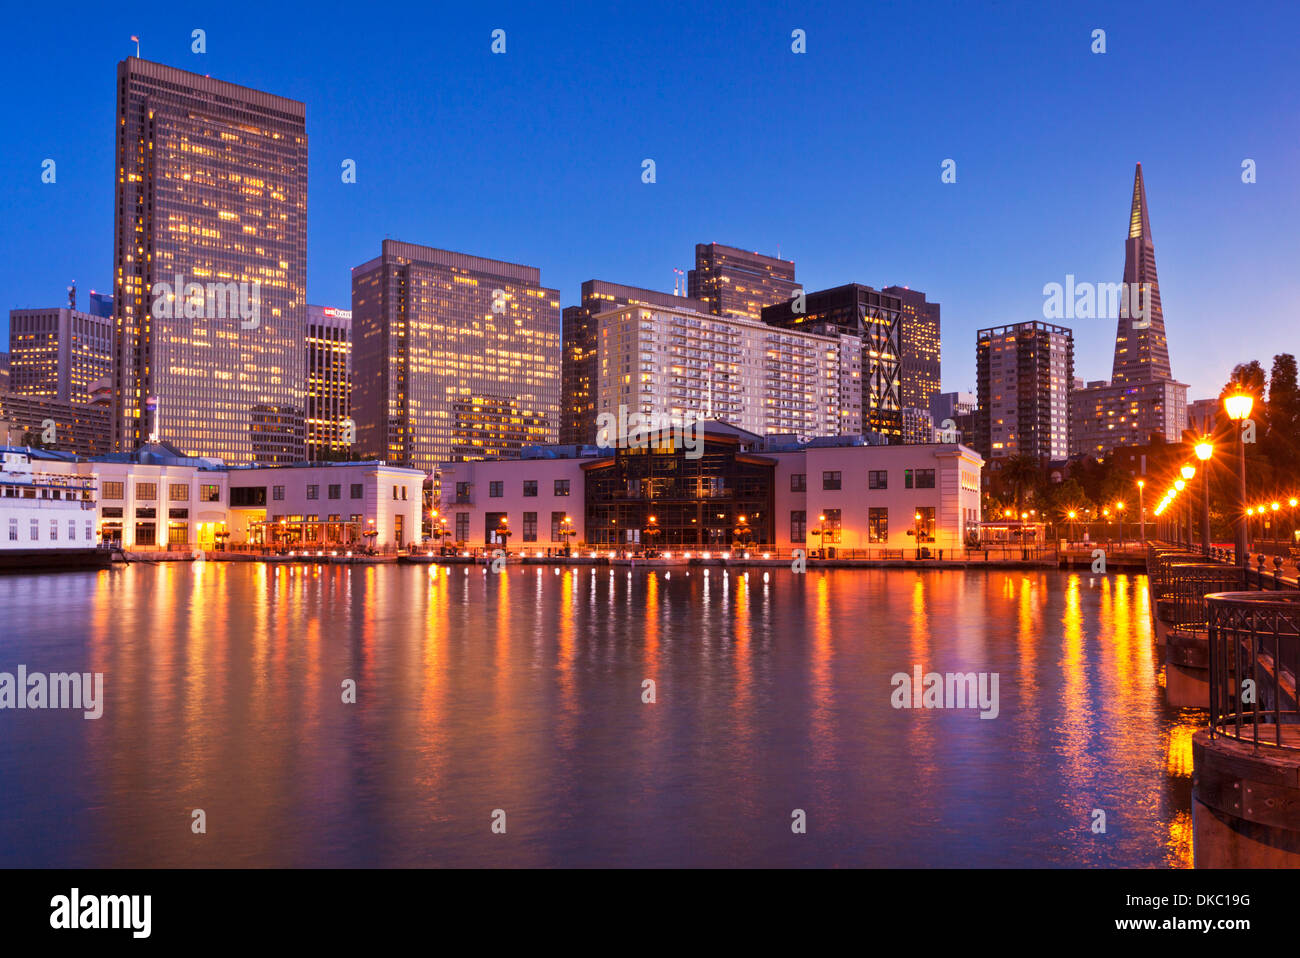 San Francisco bei Nacht - The Financial District und Transamerica Pyramid von Pier 7 Kalifornien Vereinigte Staaten von Amerika USA Stockfoto